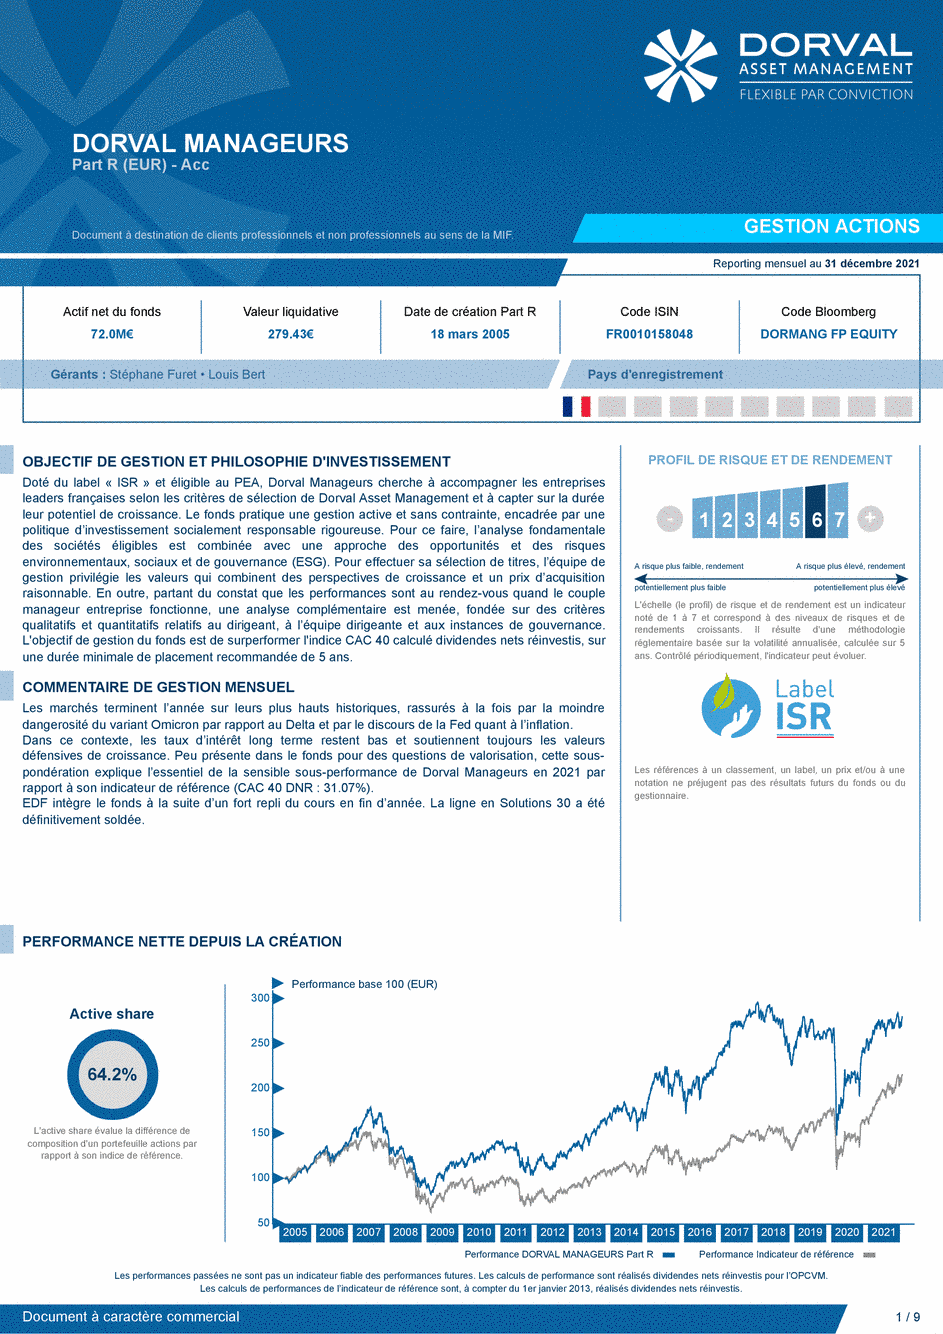 Reporting DORVAL MANAGEURS - 31/12/2021 - Français